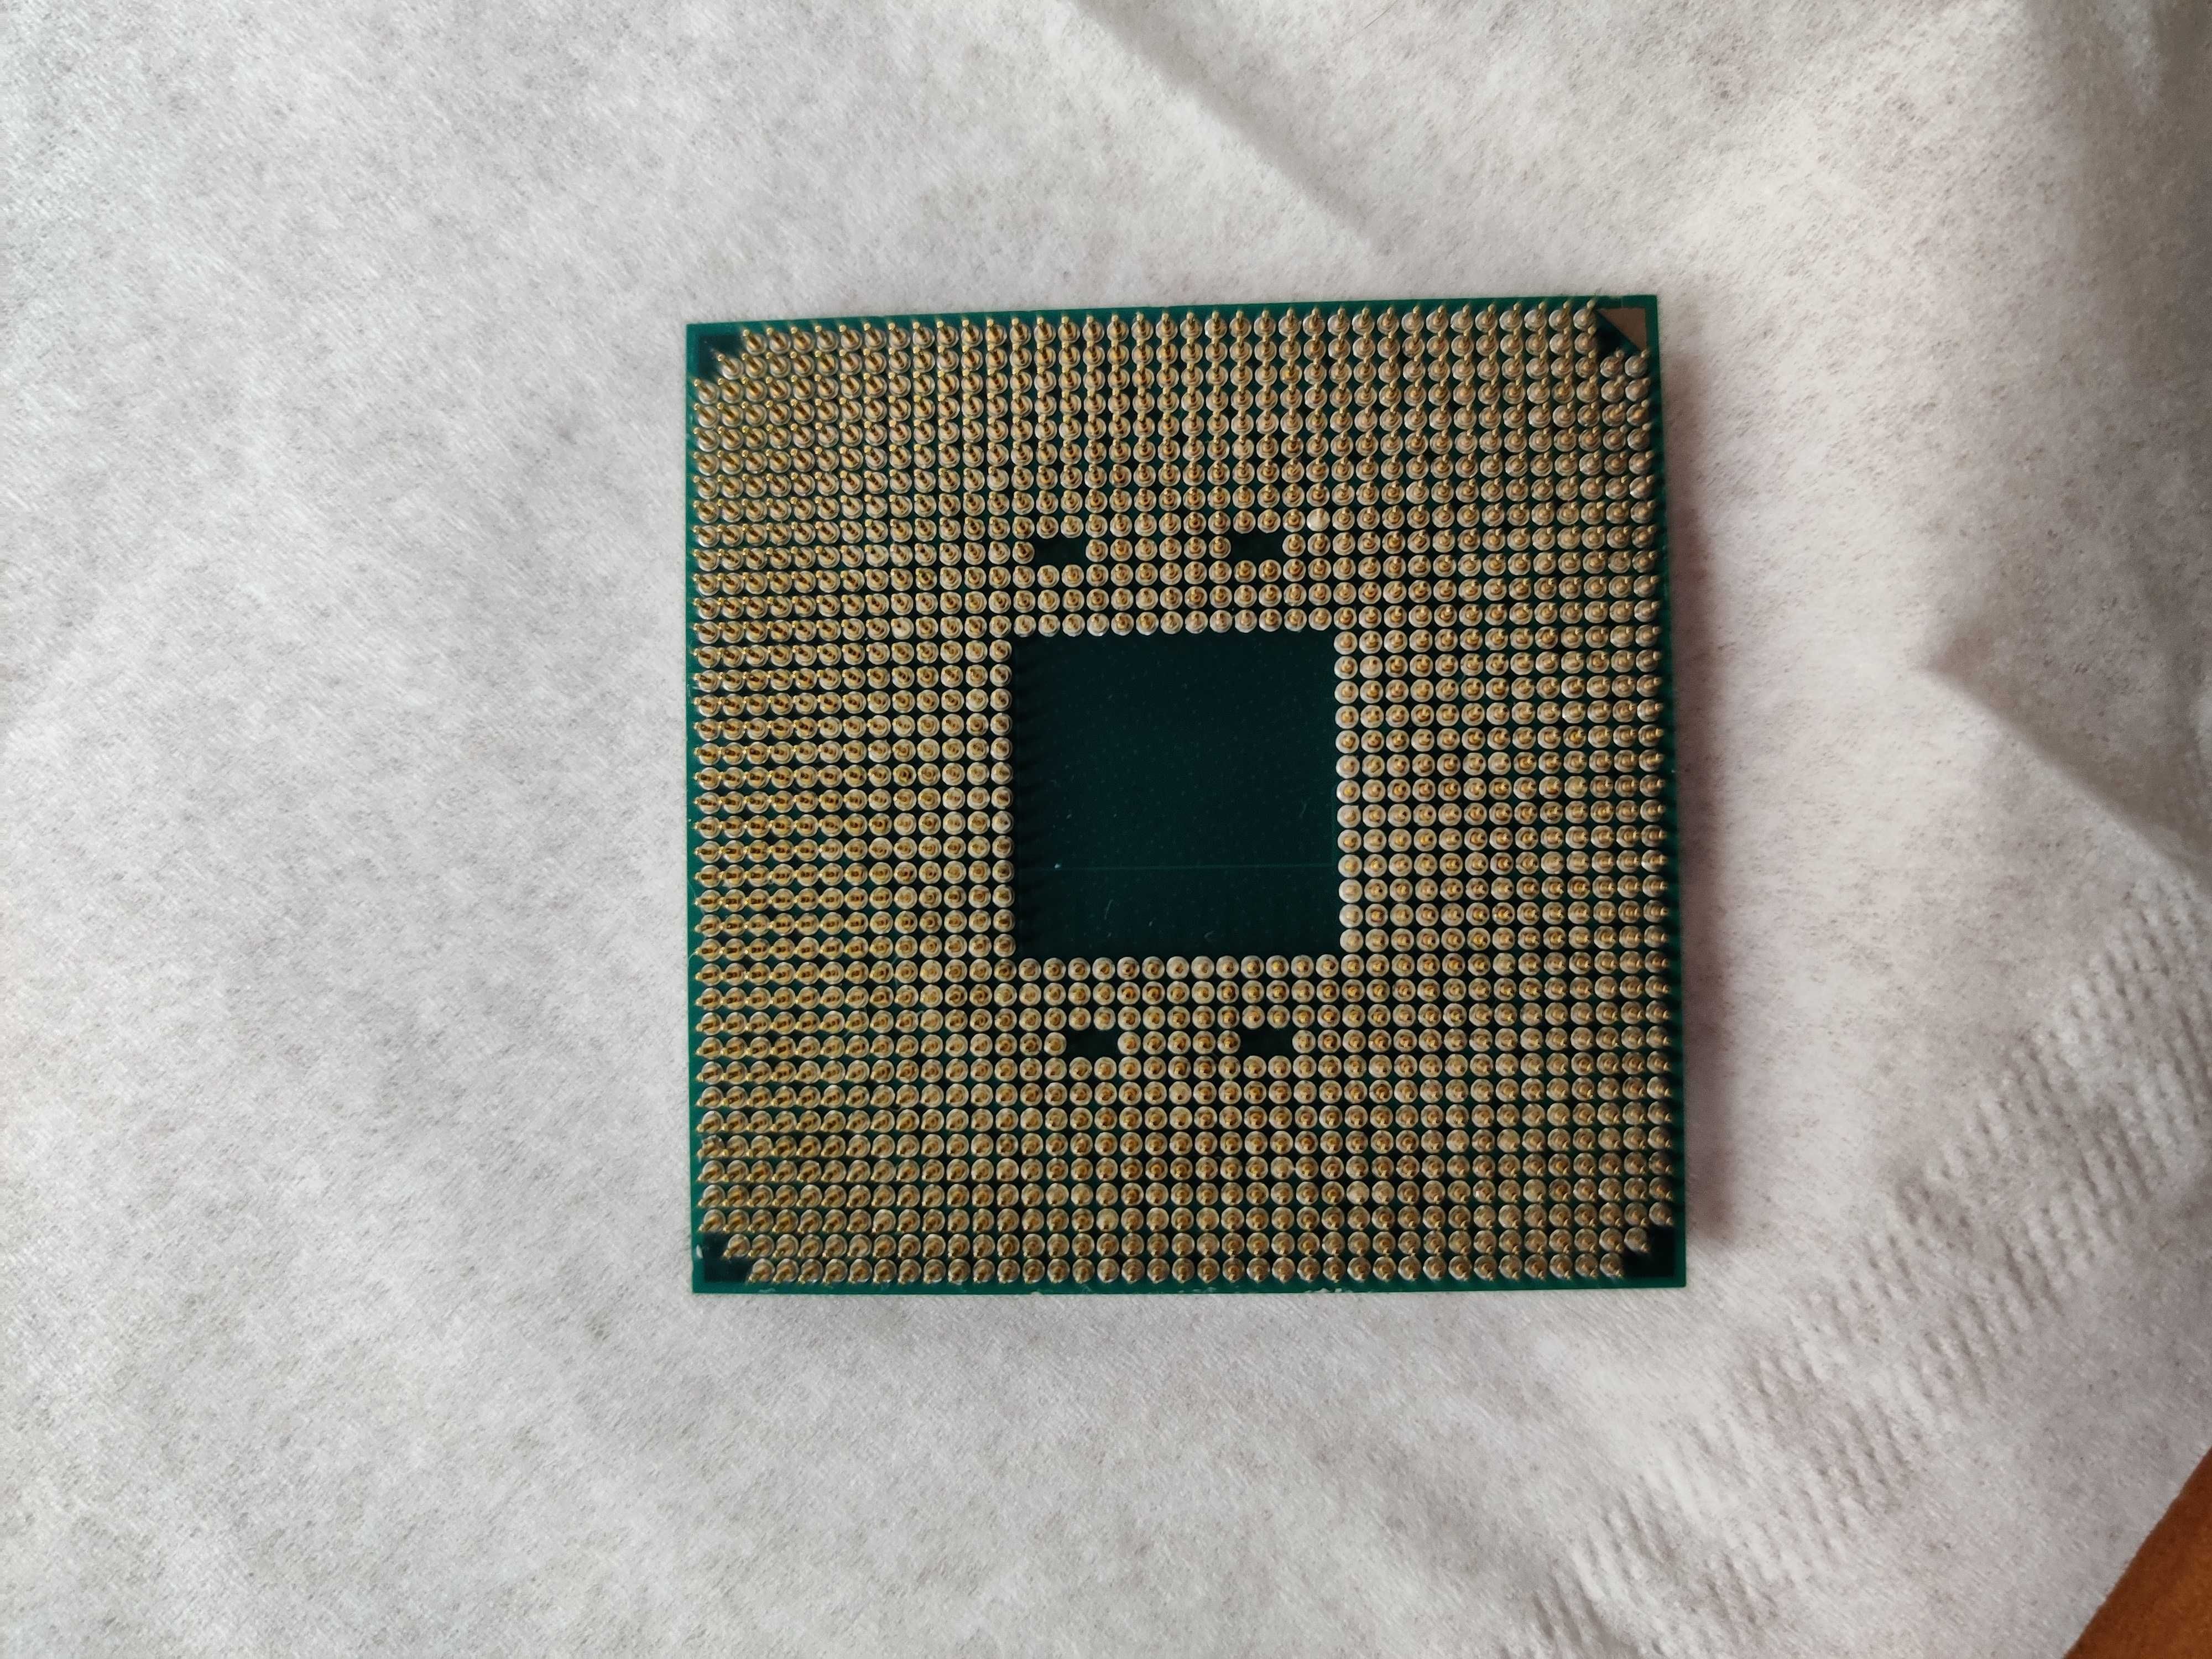 Процесор AMD Ryzen 5 3500X